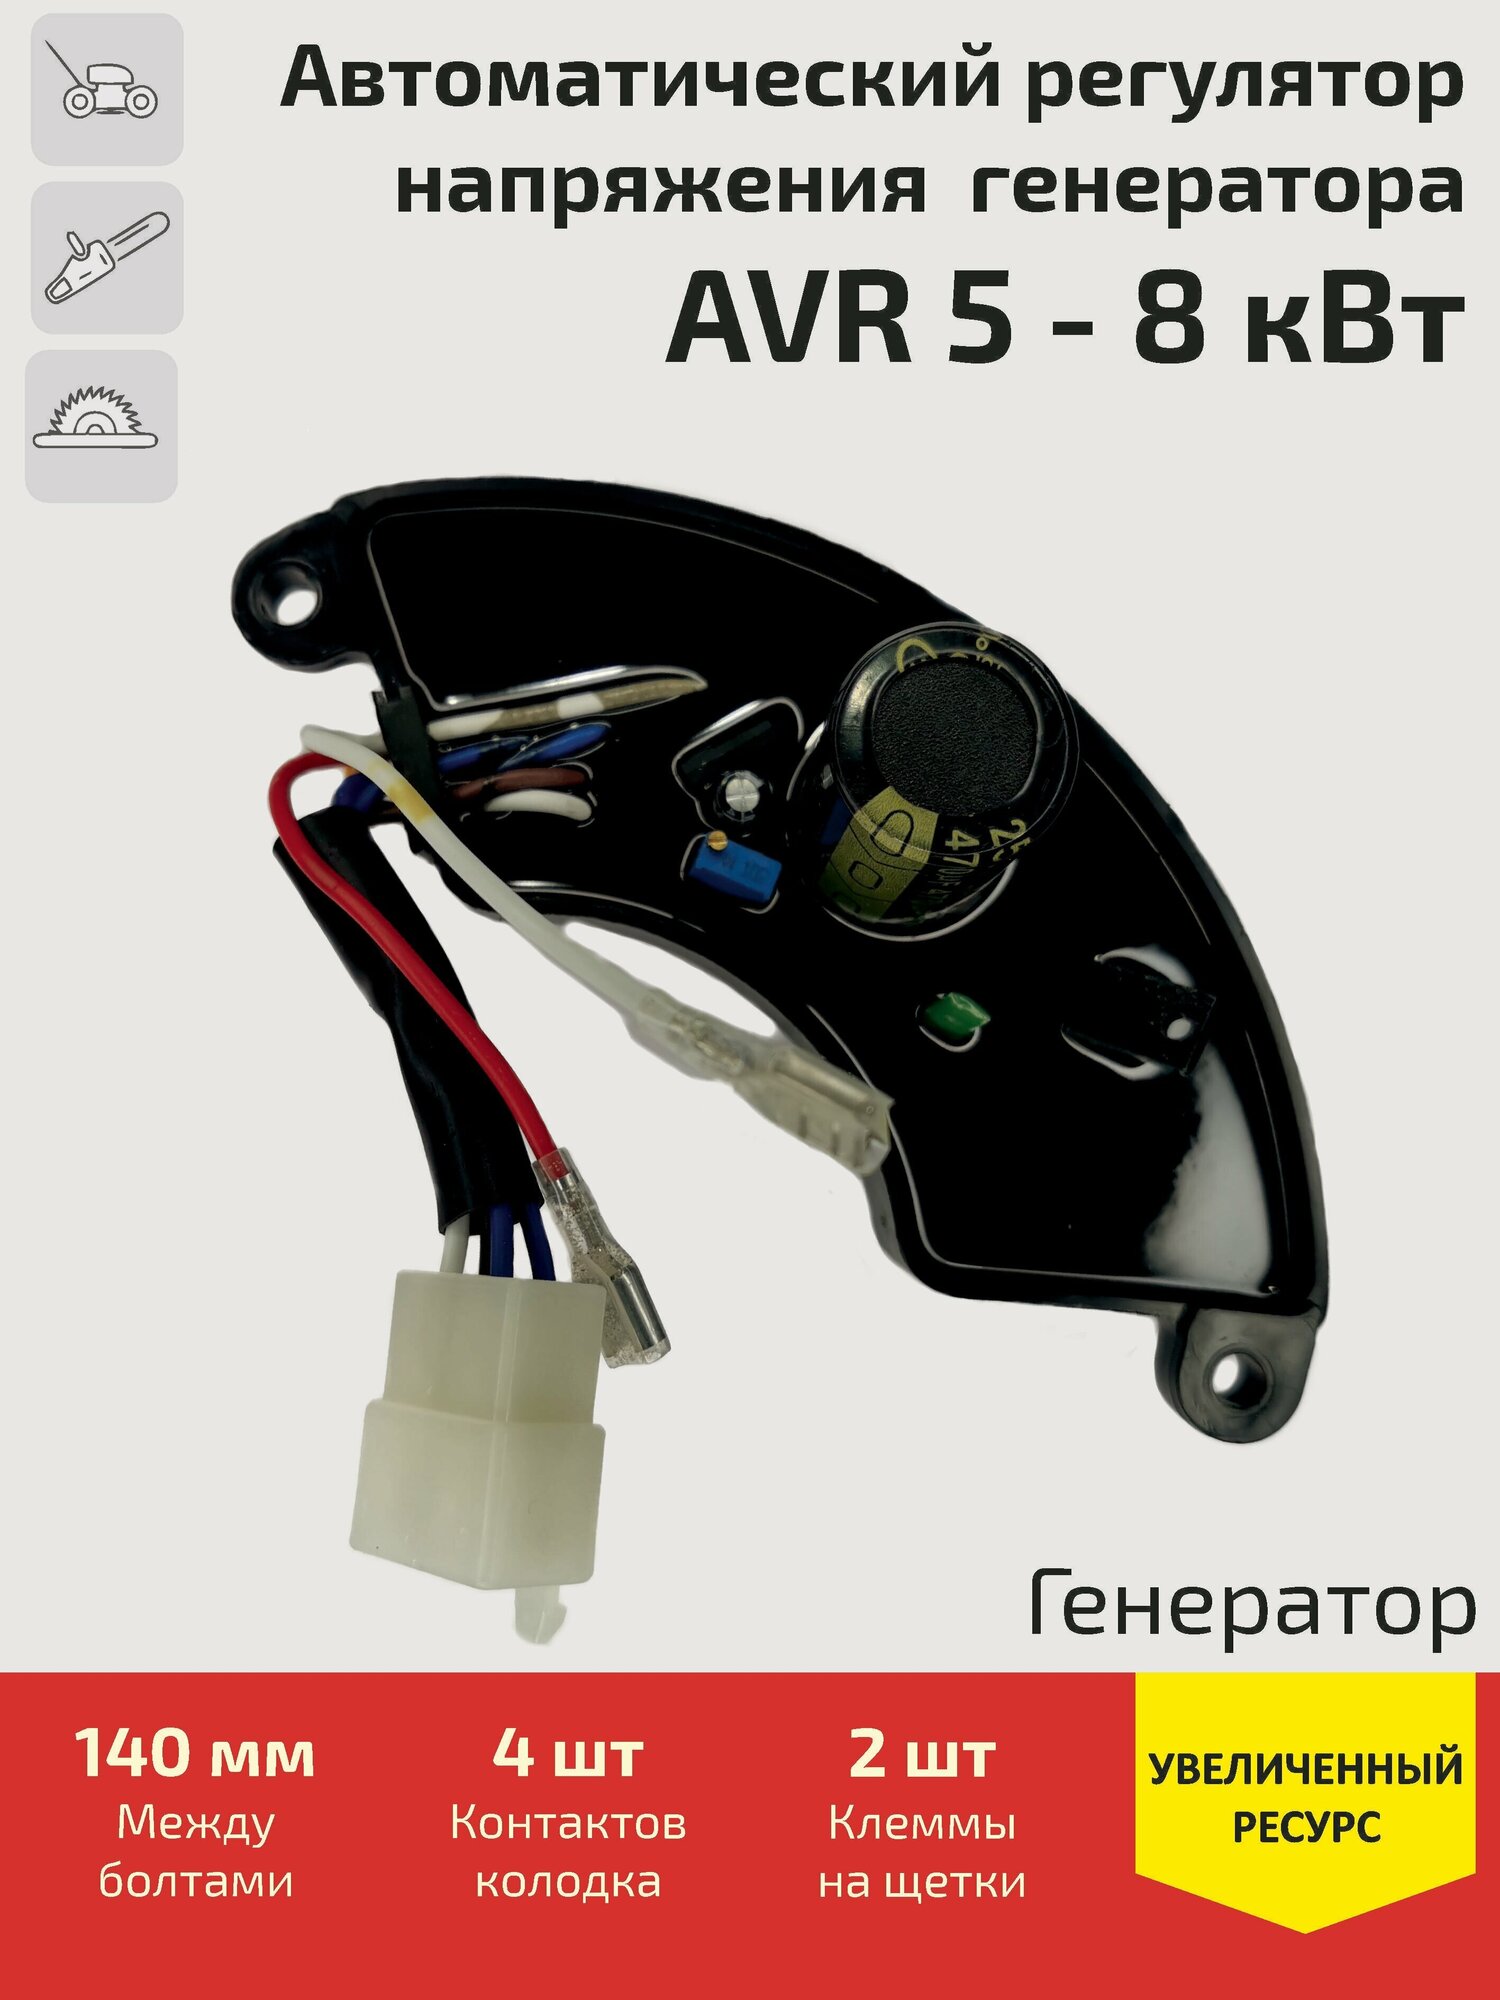 Автоматический регулятор напряжения (блок AVR АВР) для генератора 5 - 8 кВт (колодка 4 контакта + 2 клеммы)